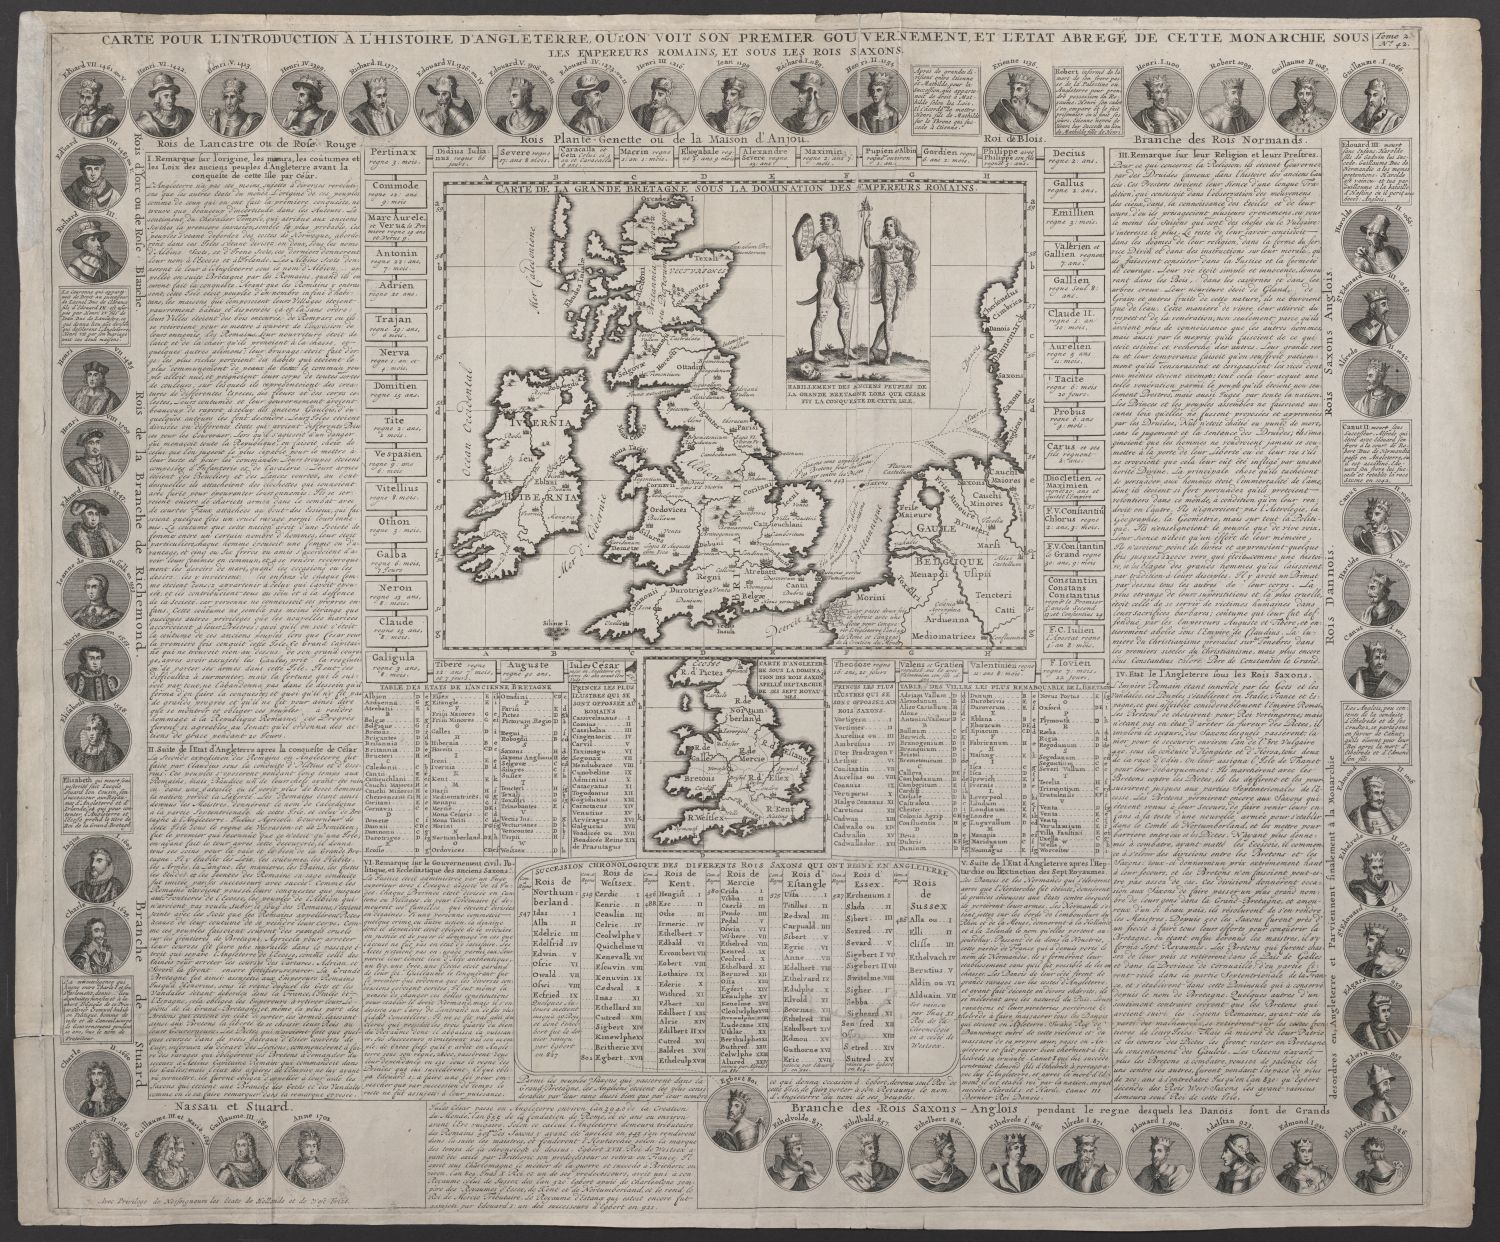 Genealogisches Blatt zur Einführung in die Geschichte von England (Stiftung Händelhaus, Halle CC BY-NC-SA)